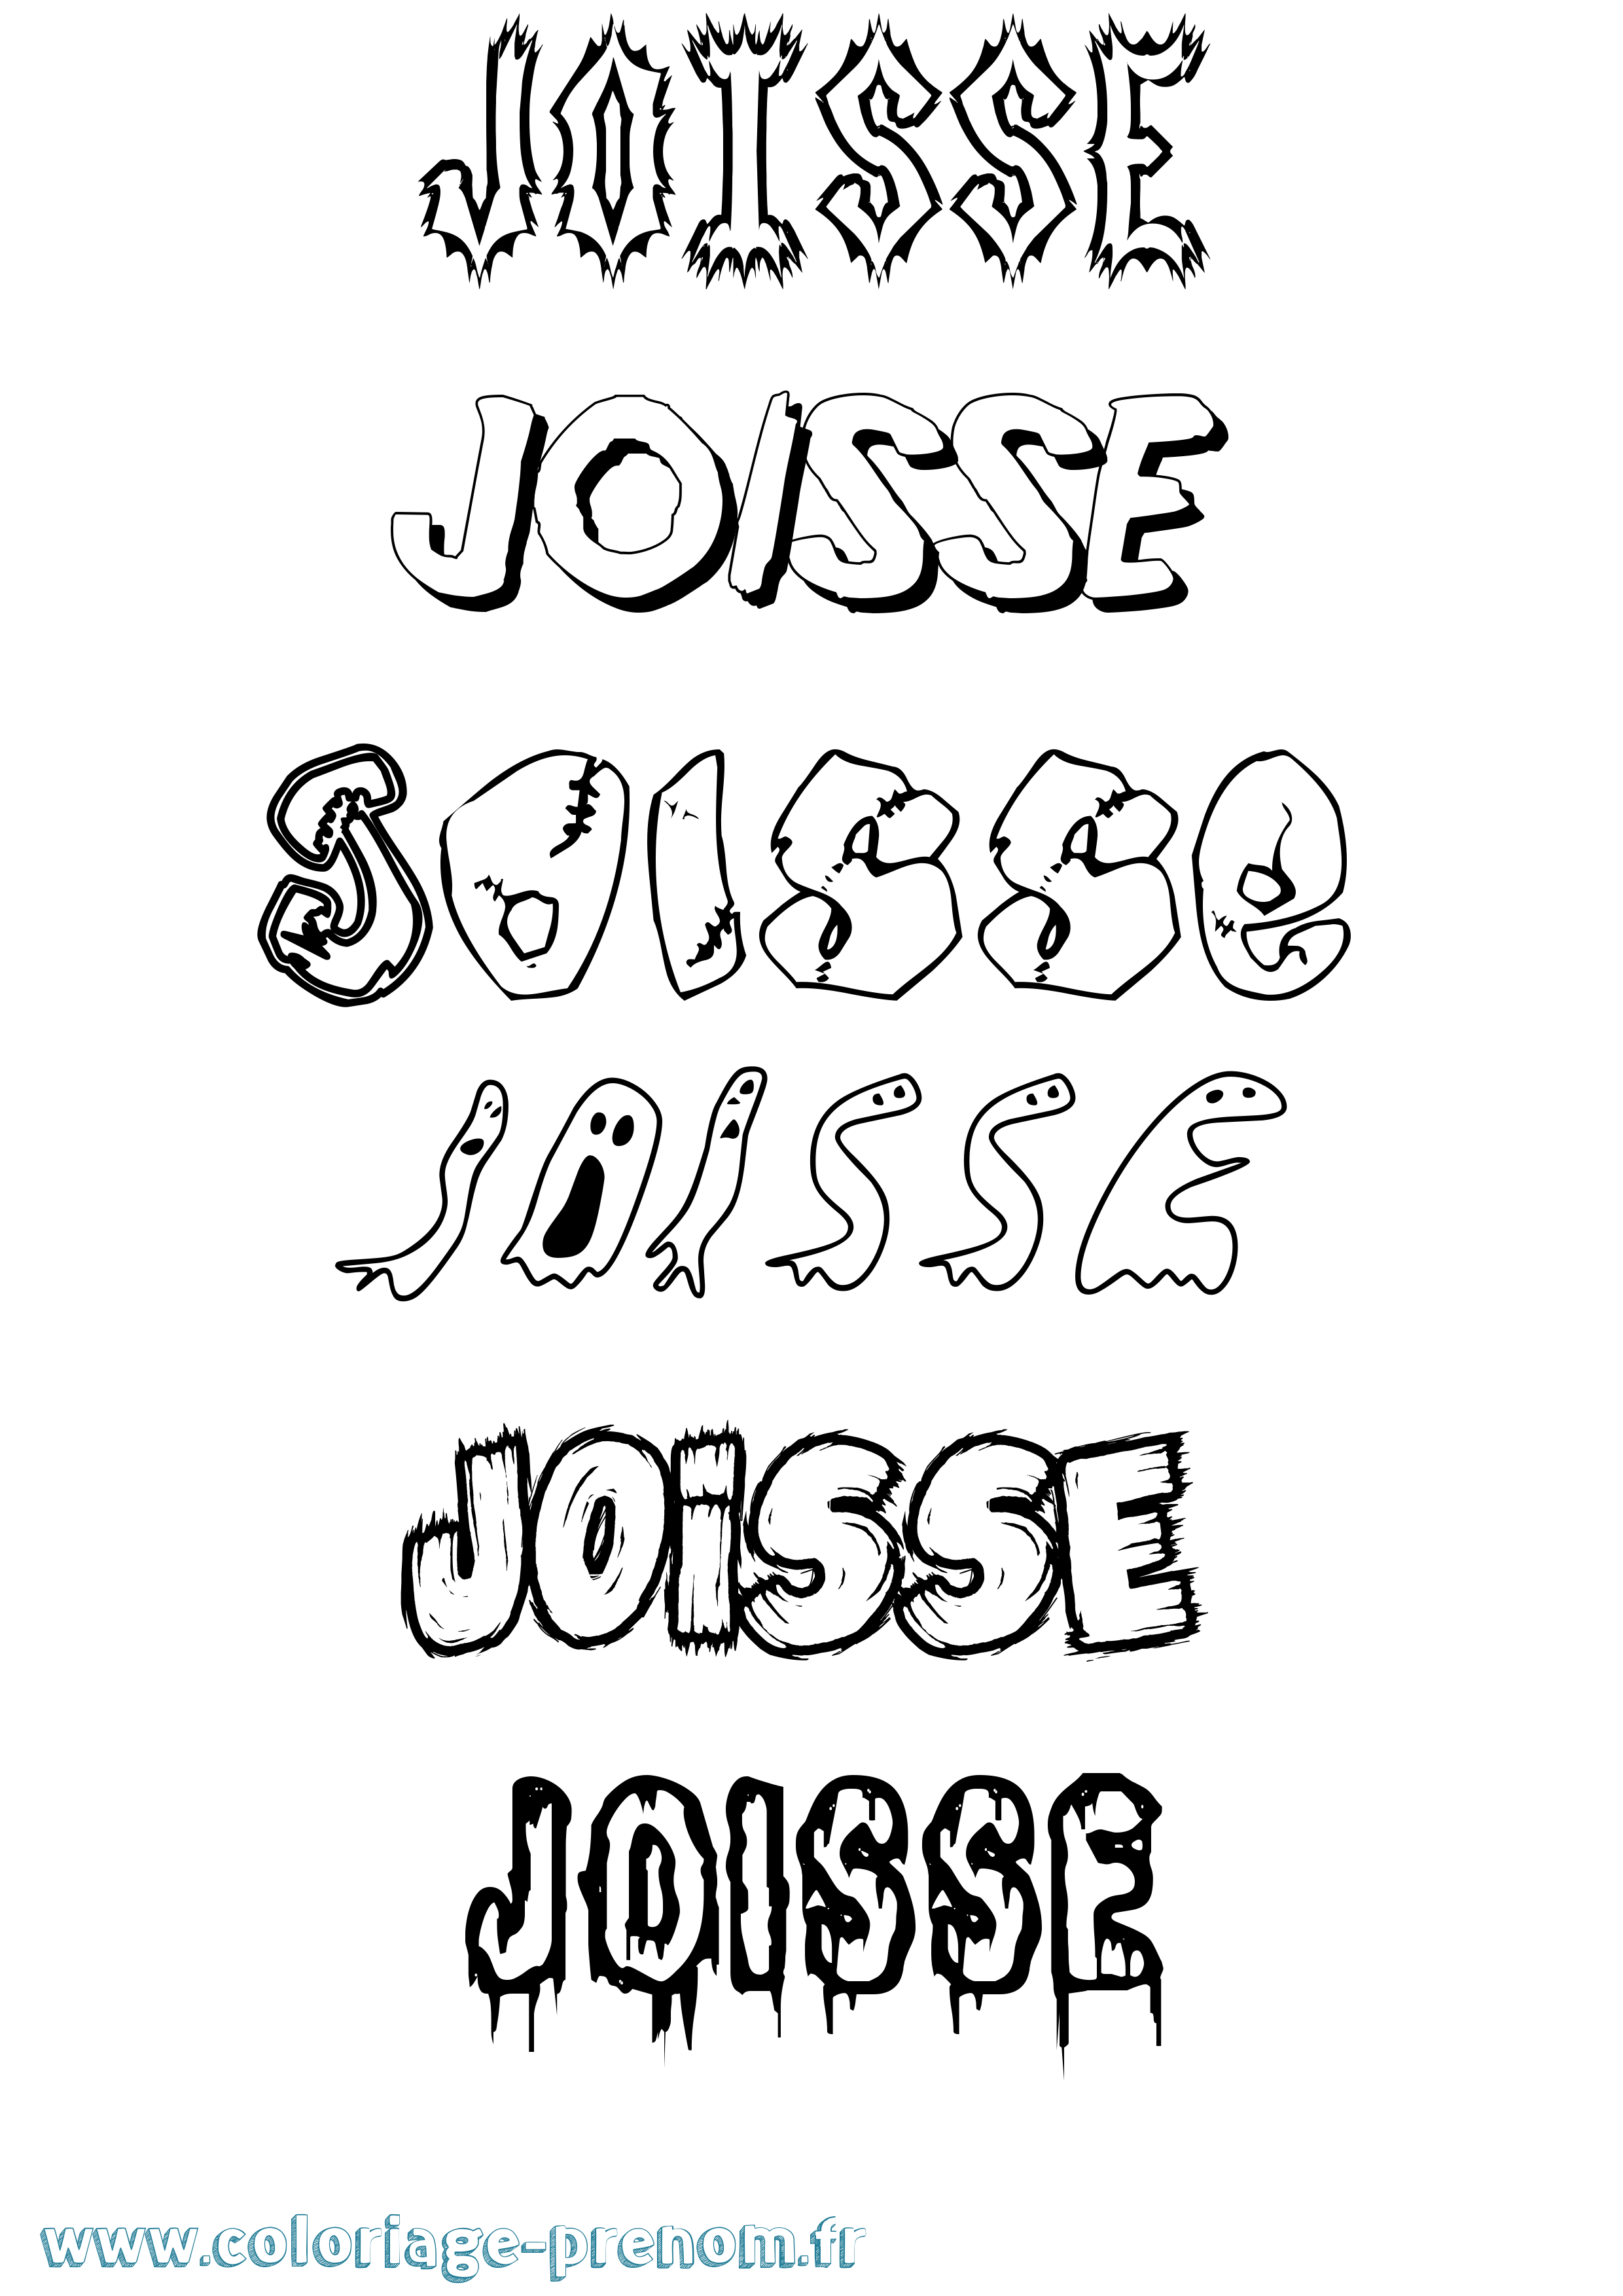 Coloriage prénom Joisse Frisson